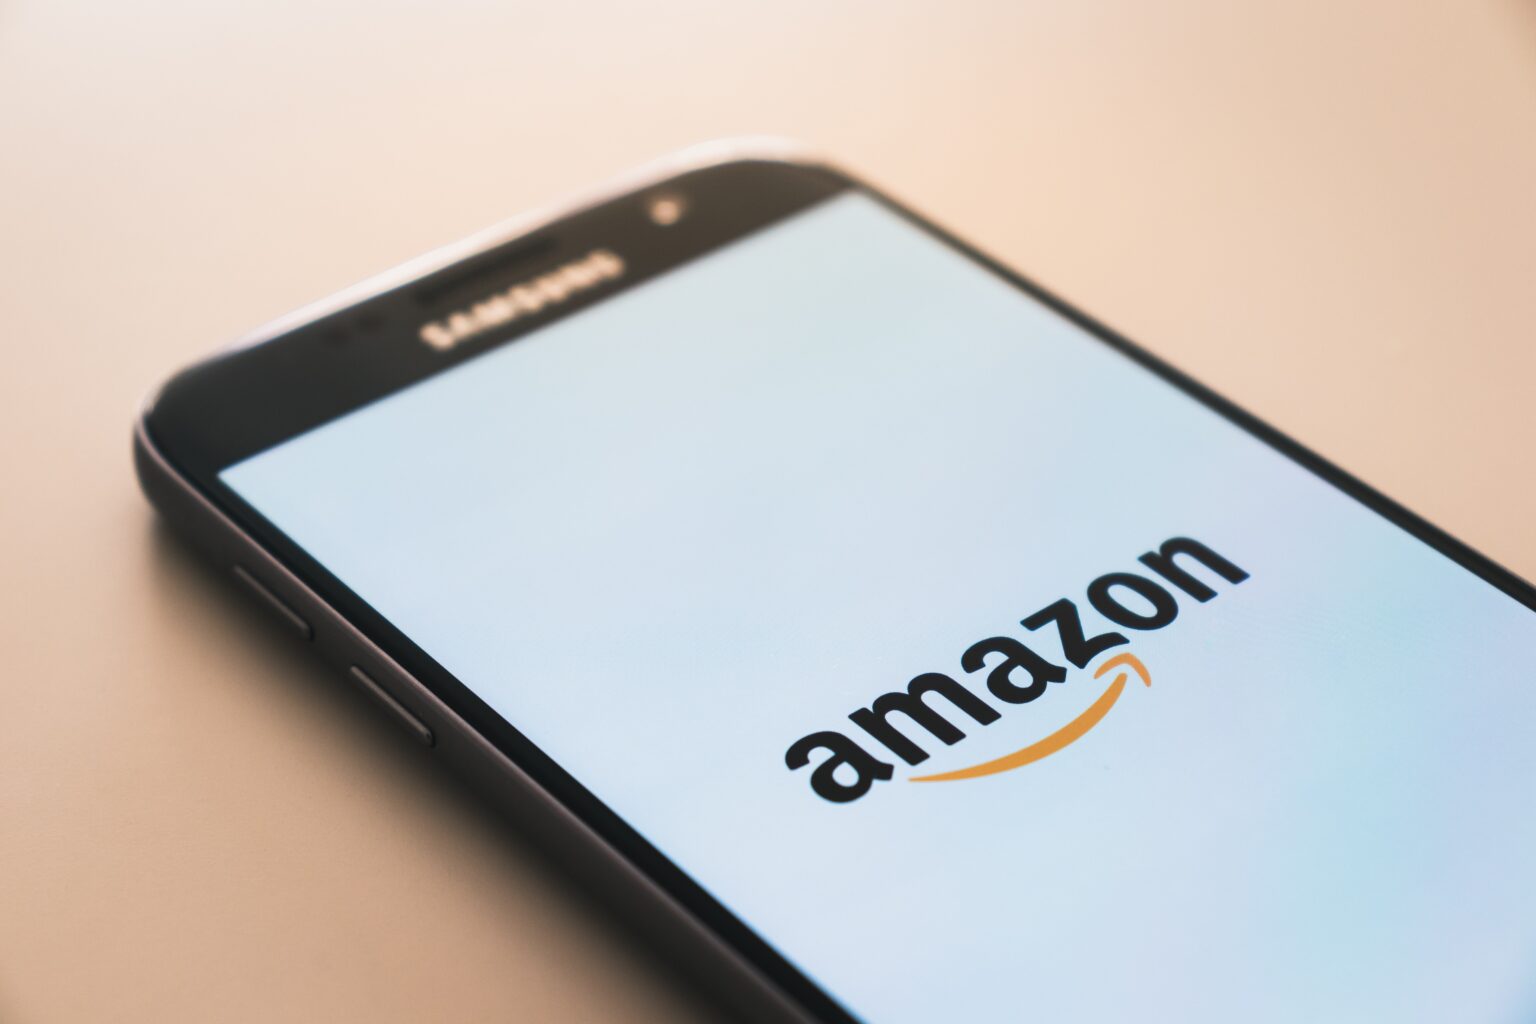 Does Amazon Wishlist Show Your Address